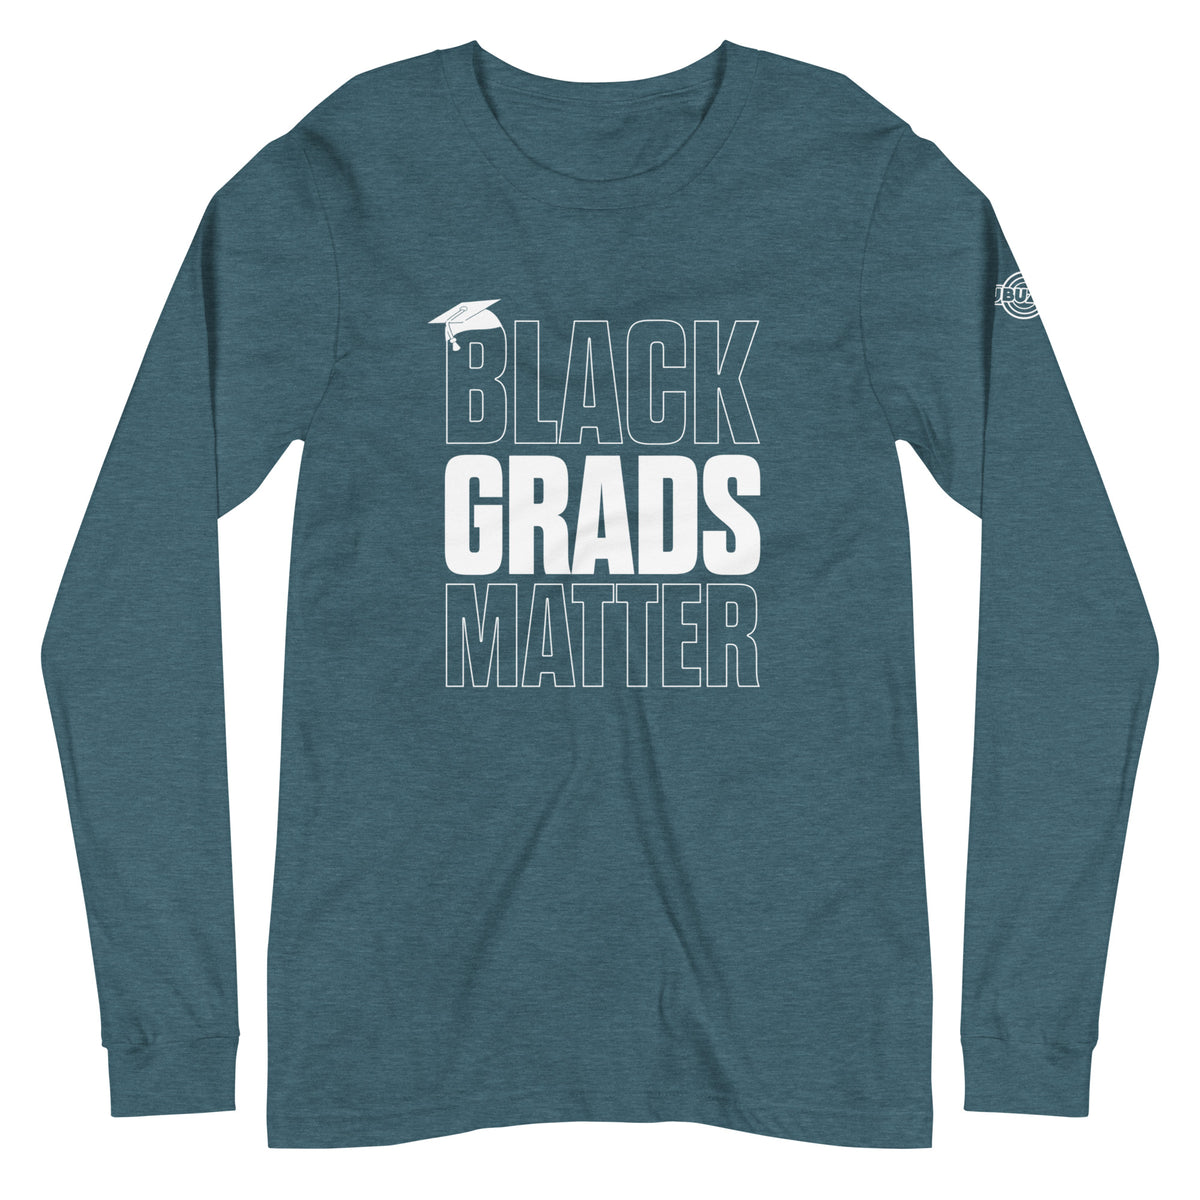 Black Grads Matter Unisex Long Sleeve Tee - HBCU Buzz Shop